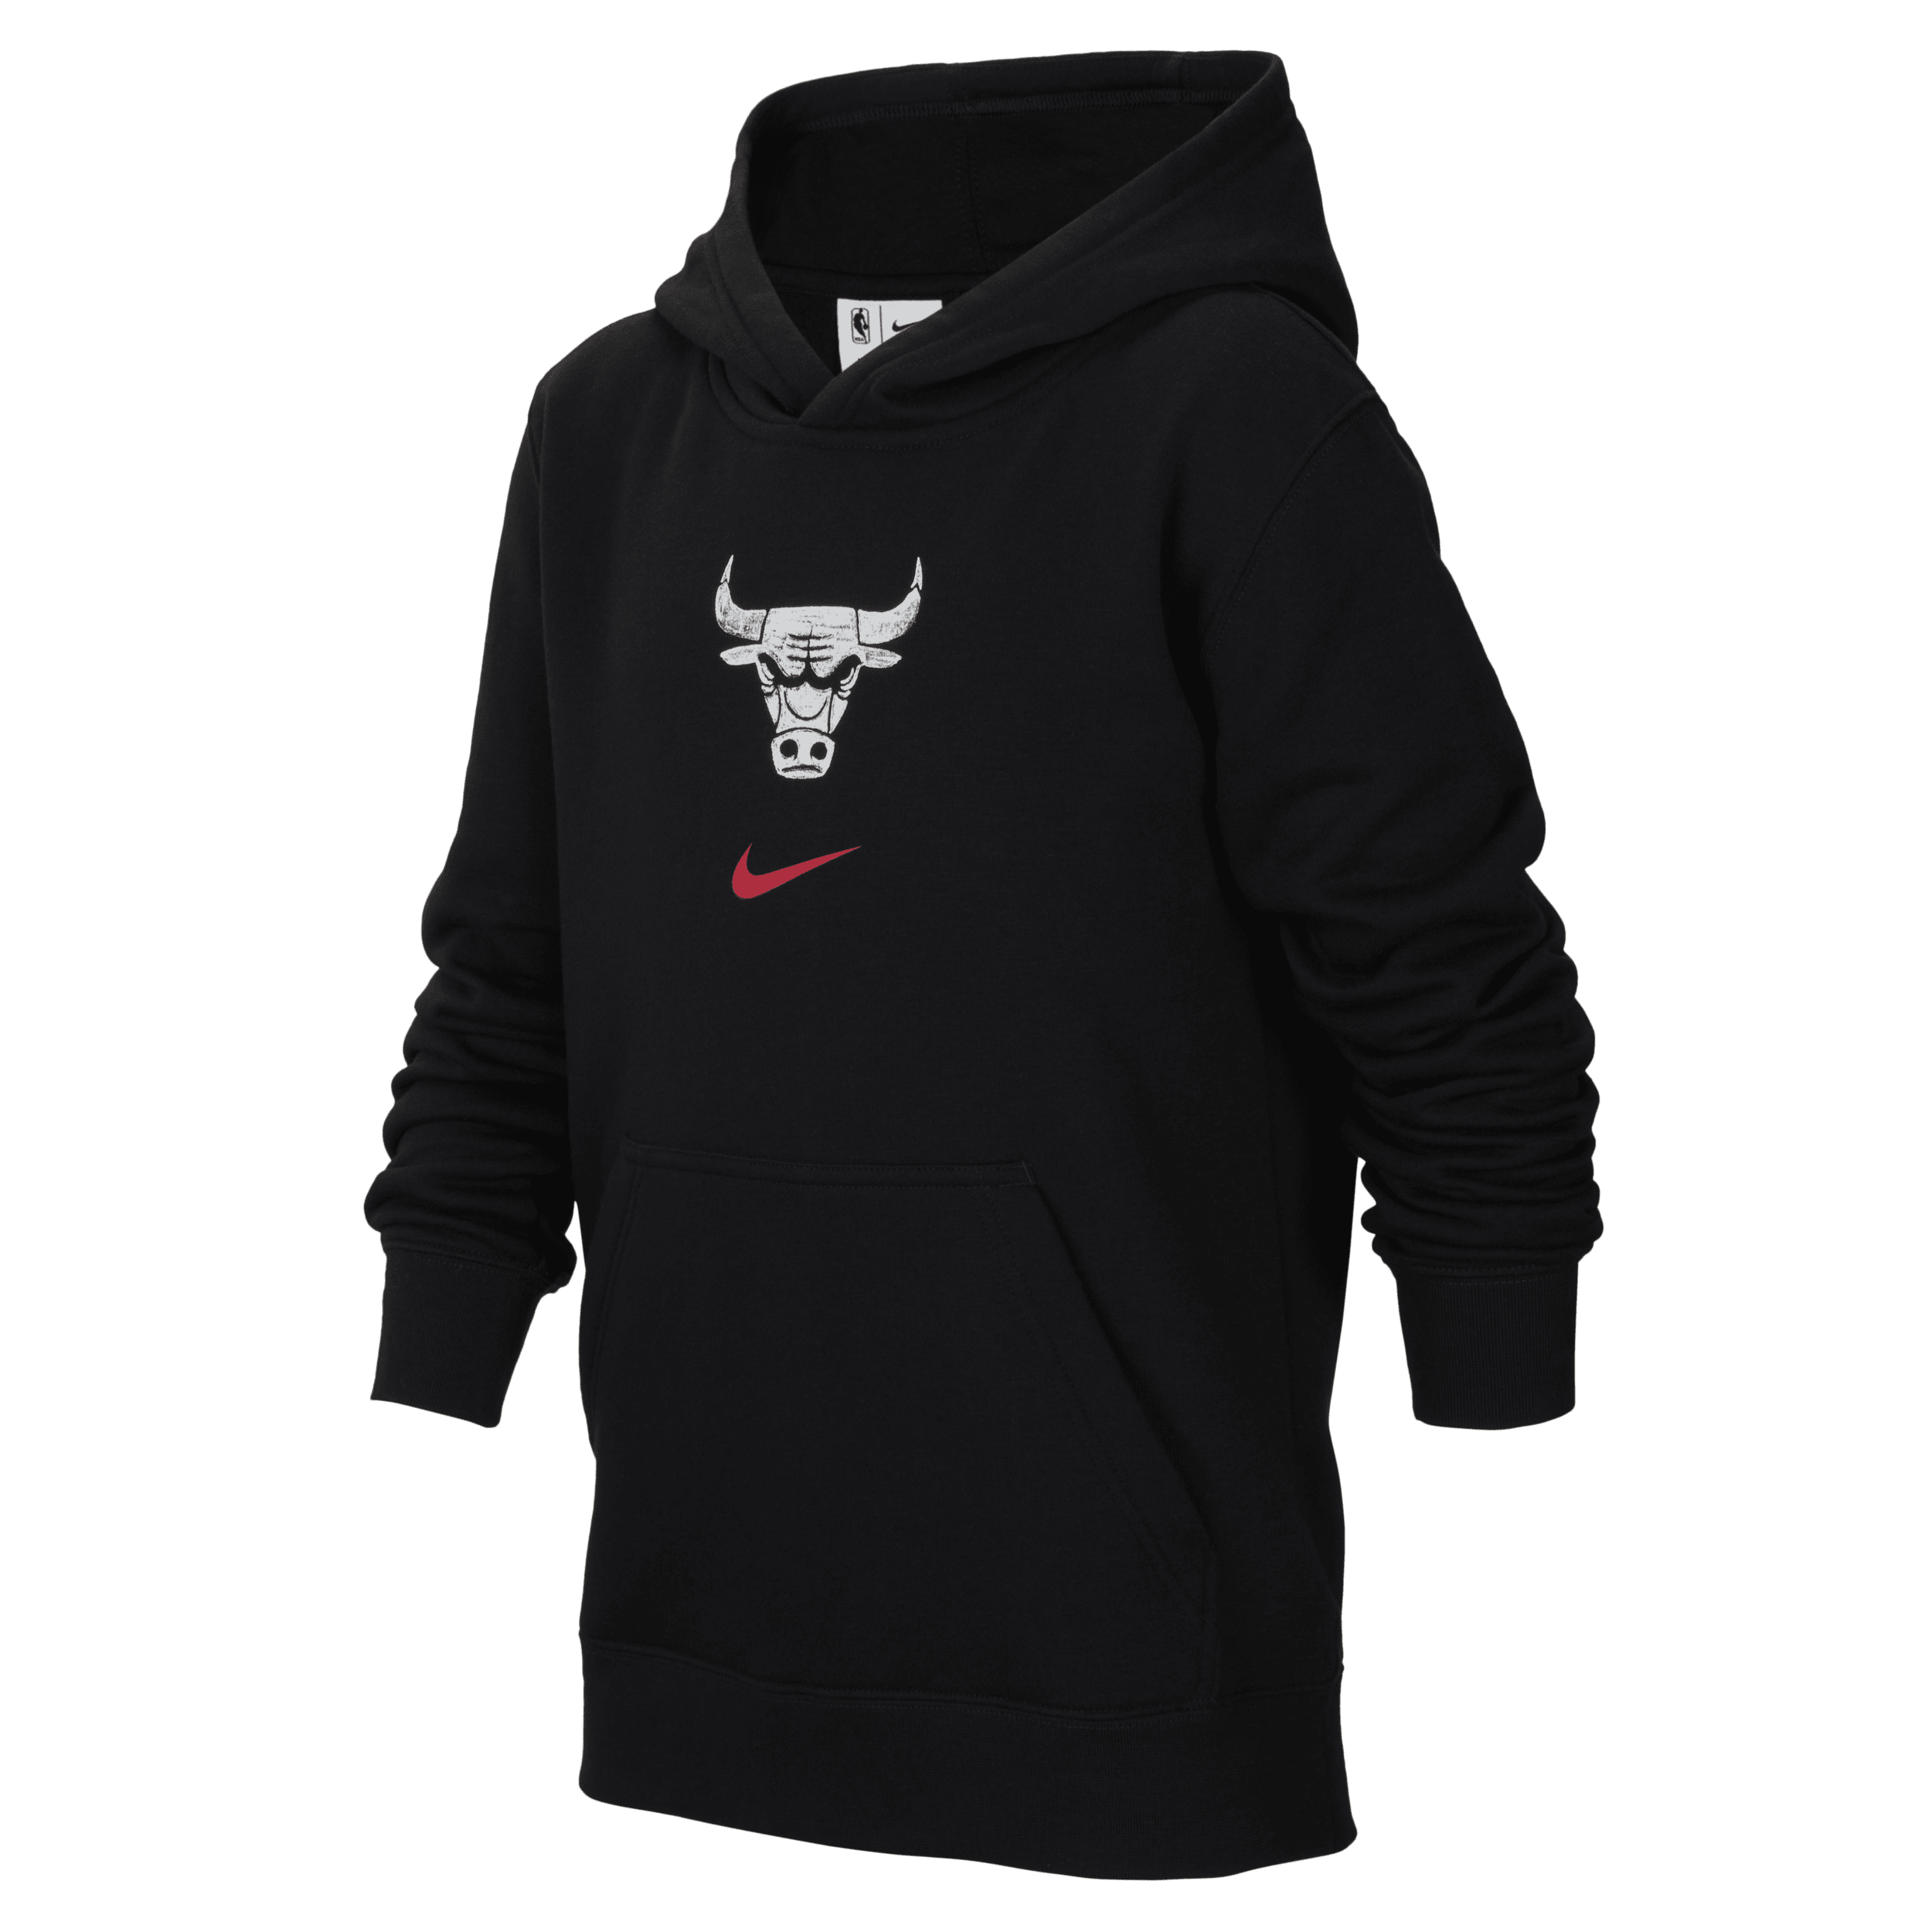 Chicago Bulls Club City Edition Nike NBA-pullover-hættetrøje til større børn (drenge) - sort